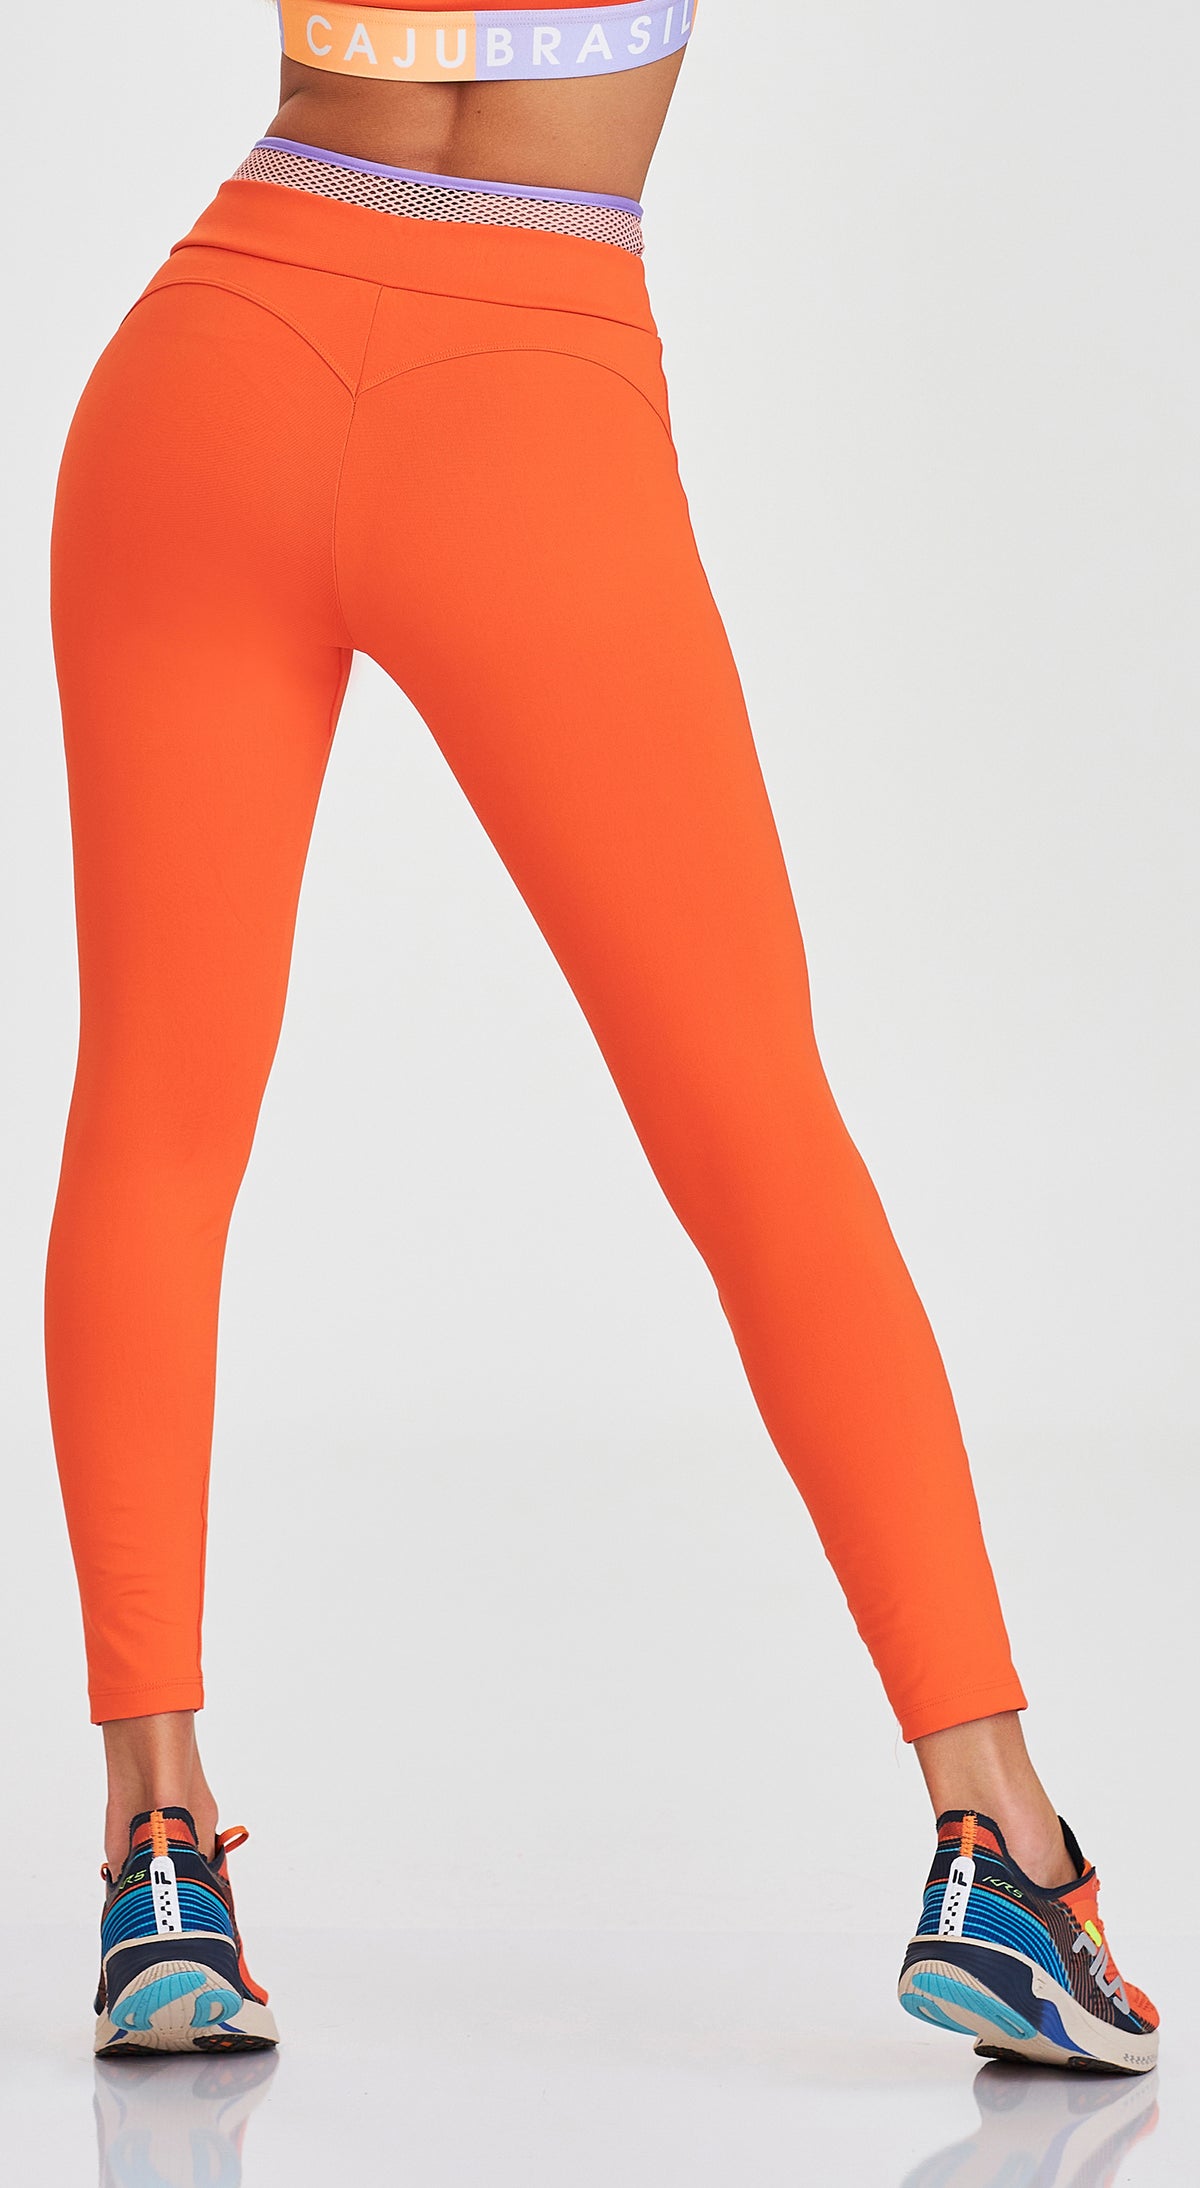 NZ Cajubrasil Legging - Orange Tangerine